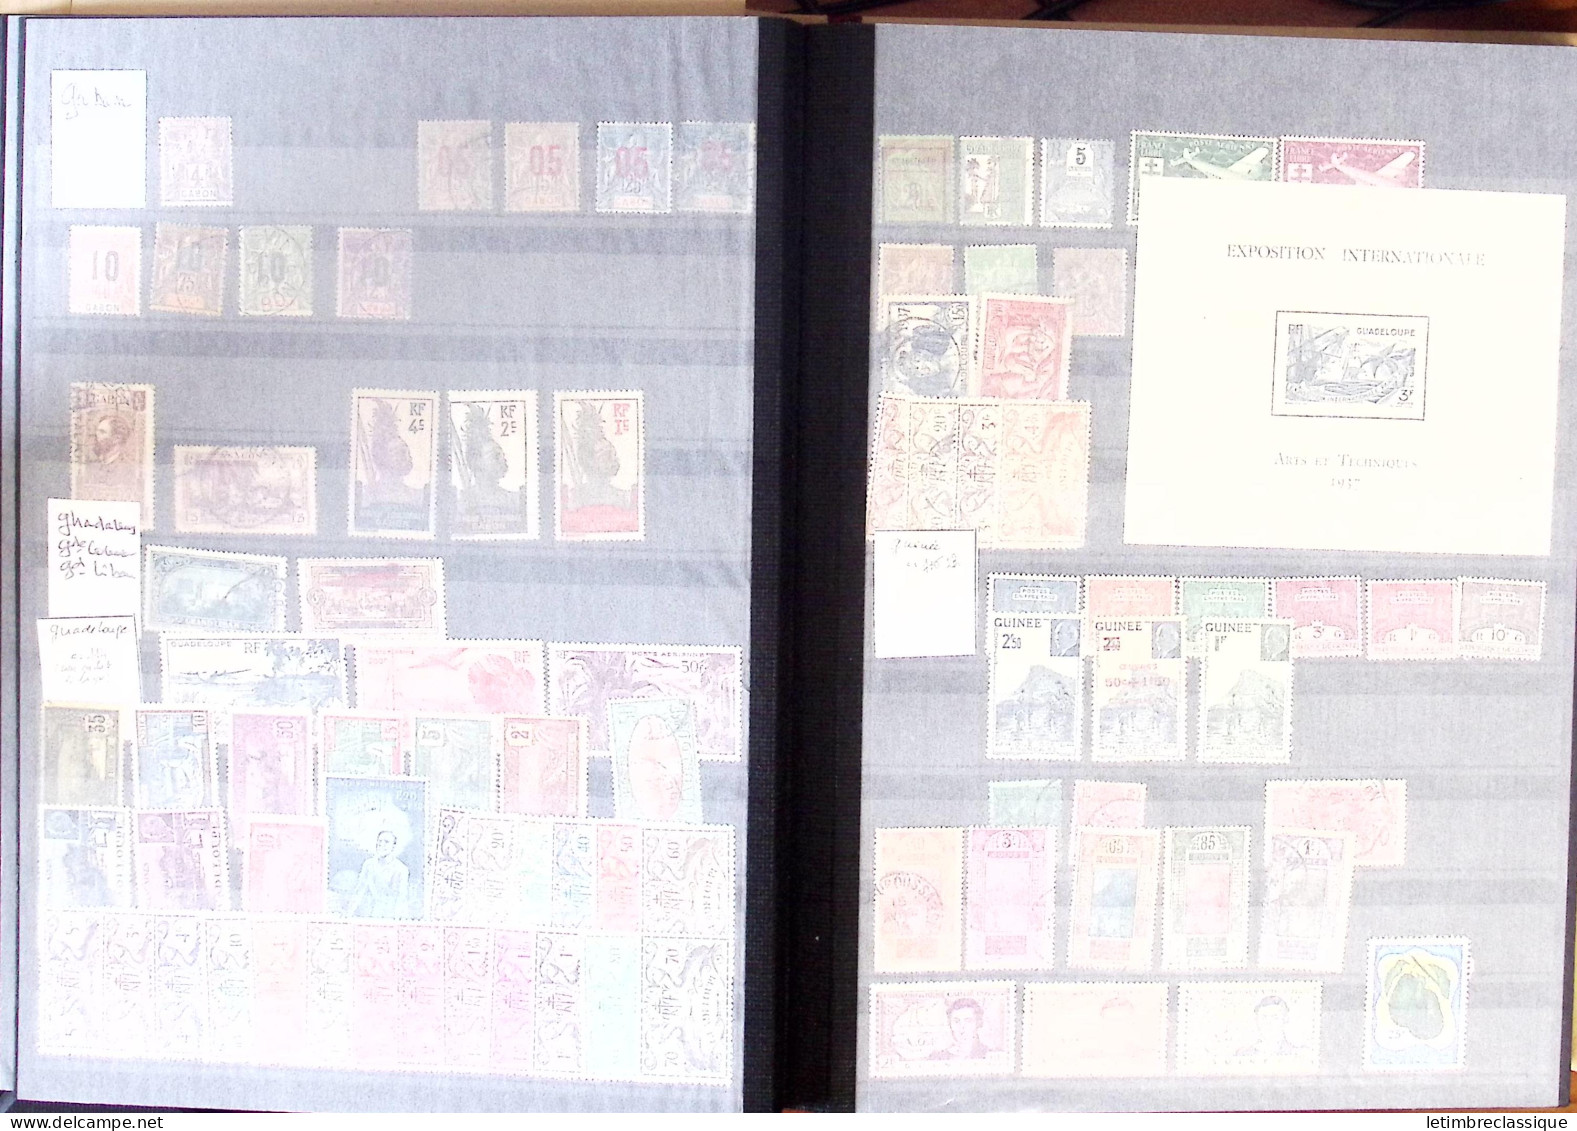 **,*,obl 1885-2007, Collection en un classeur, de timbres des COLONIES, blocs, toutes époques, neufs et obl., dont Algér